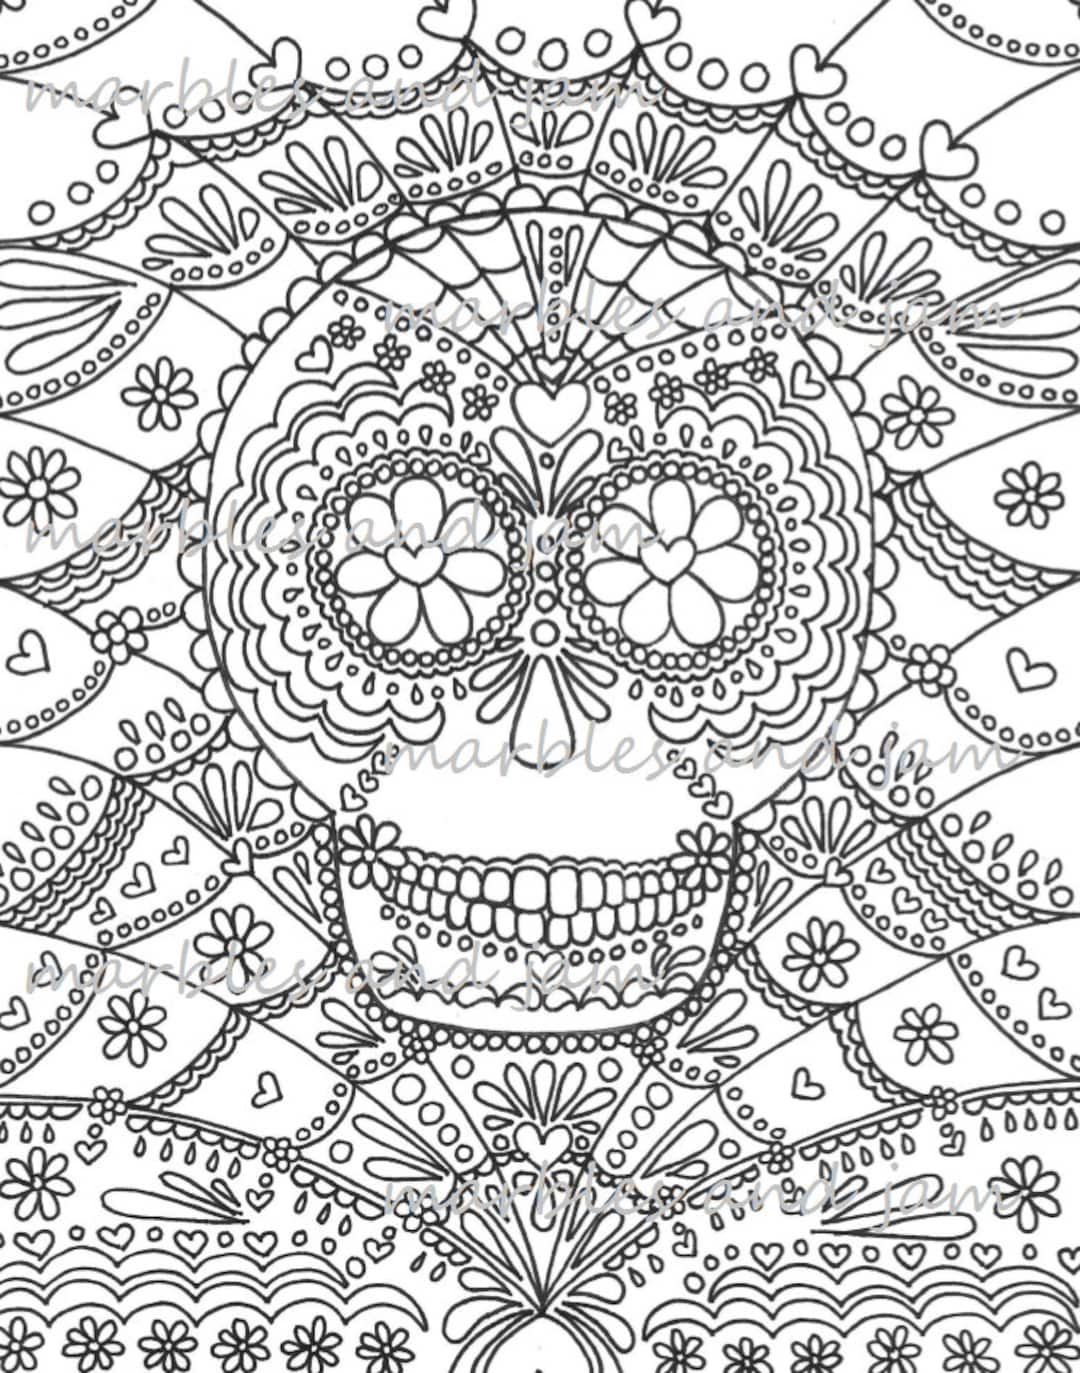 Day of the dead sugar skulls printable adult coloring page dia de los muertos